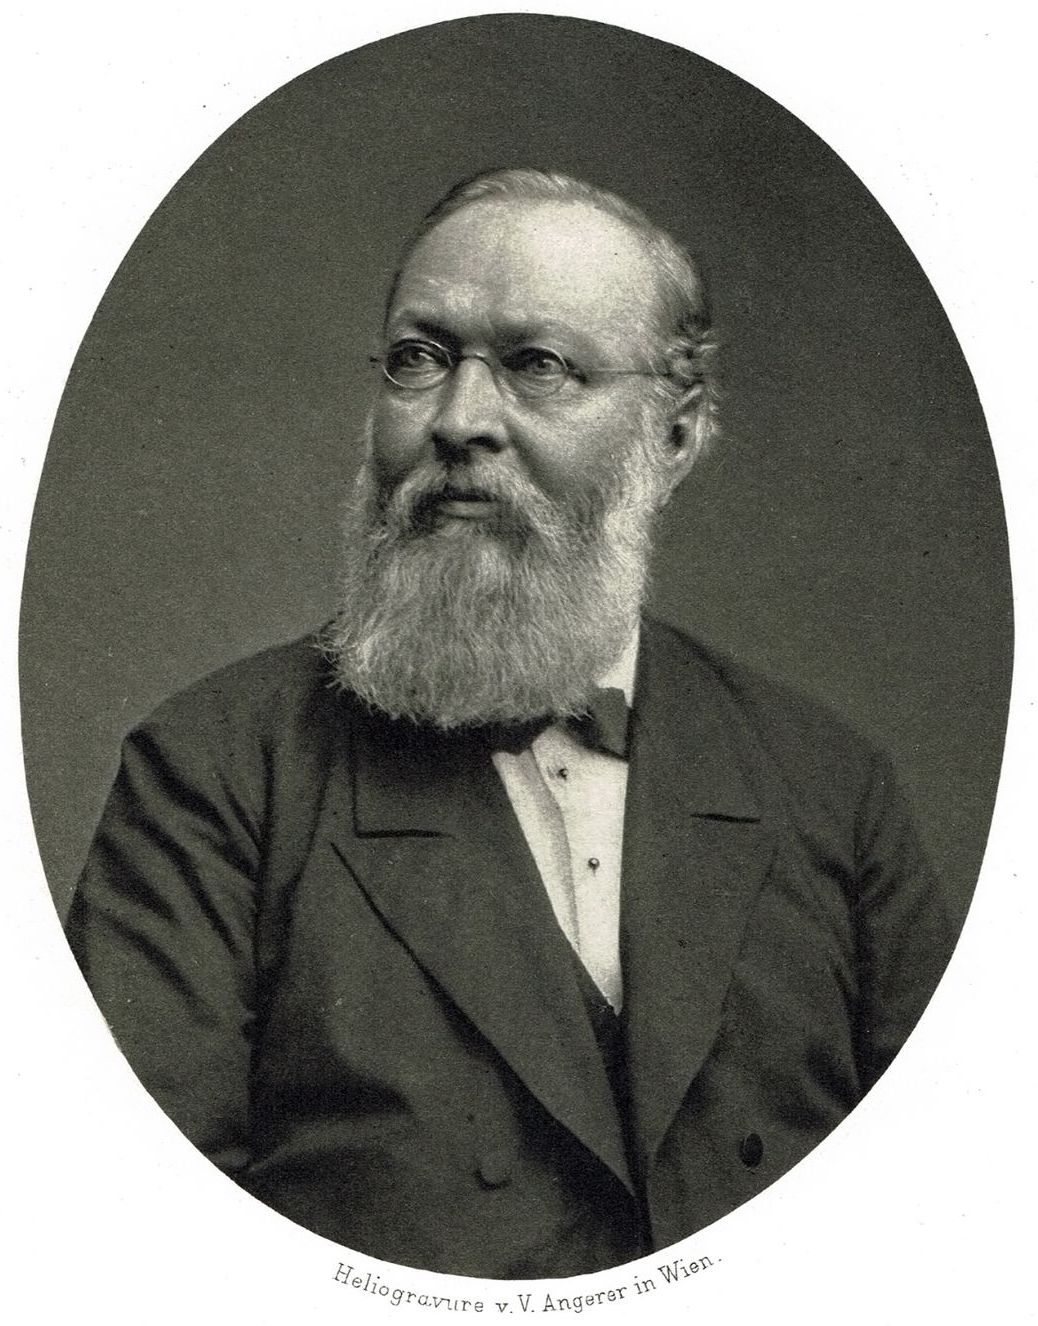 Szombathy's mentor Ferdinand von Hochstetter